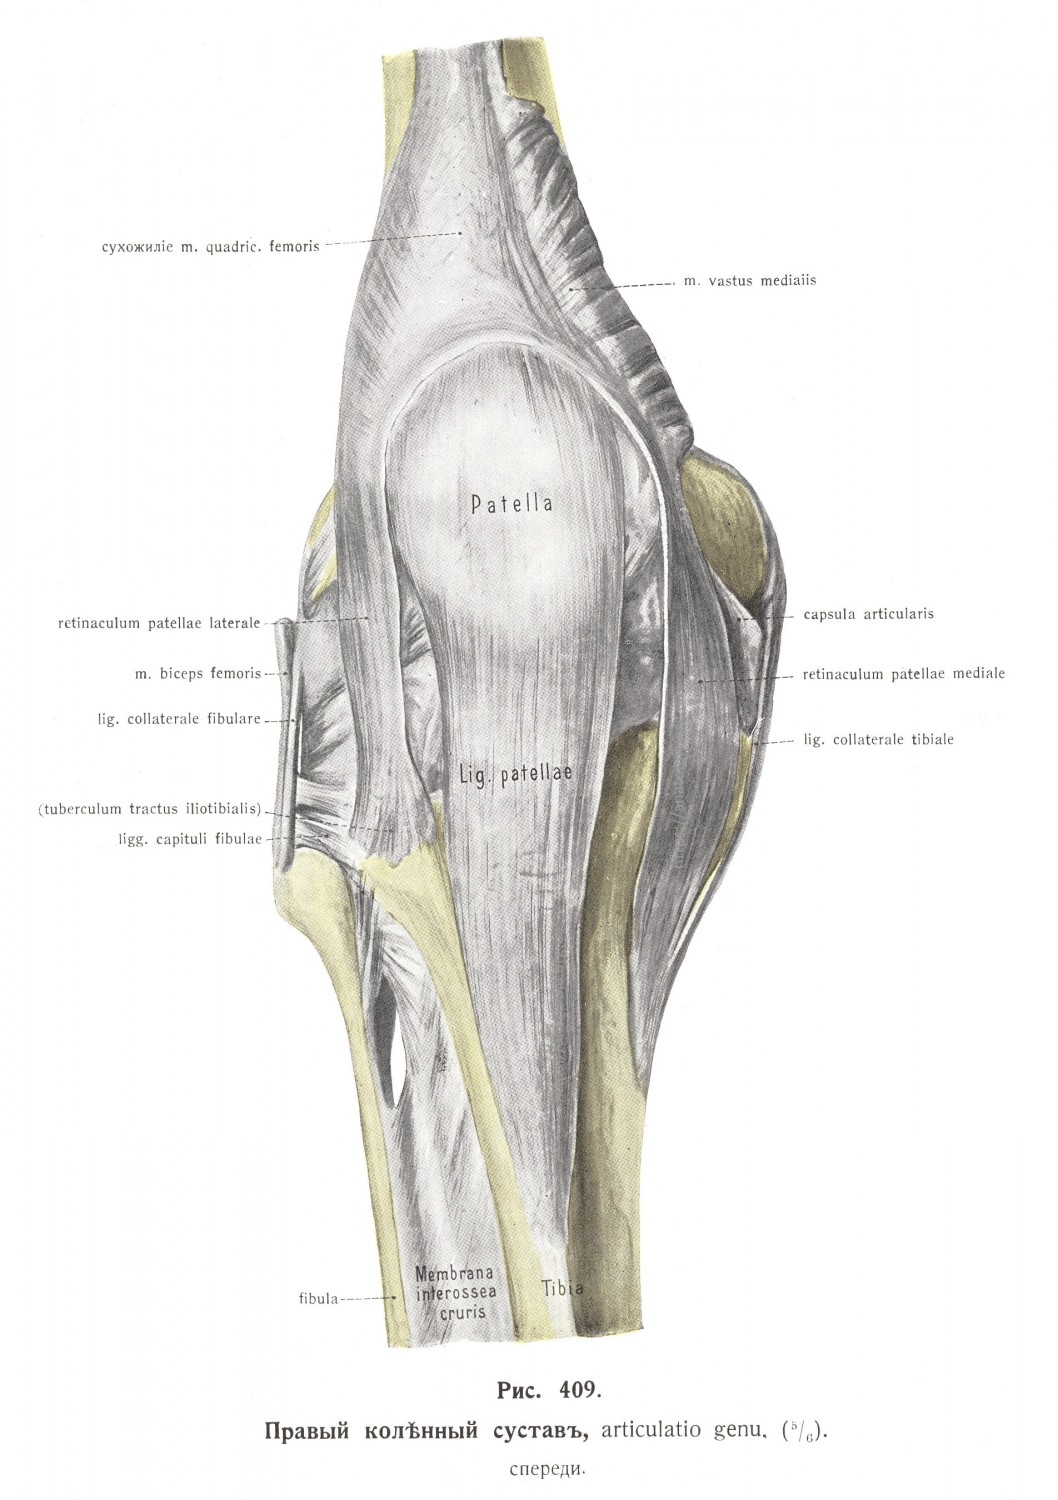 Правый коленный сустав, articulatio genu, спереди